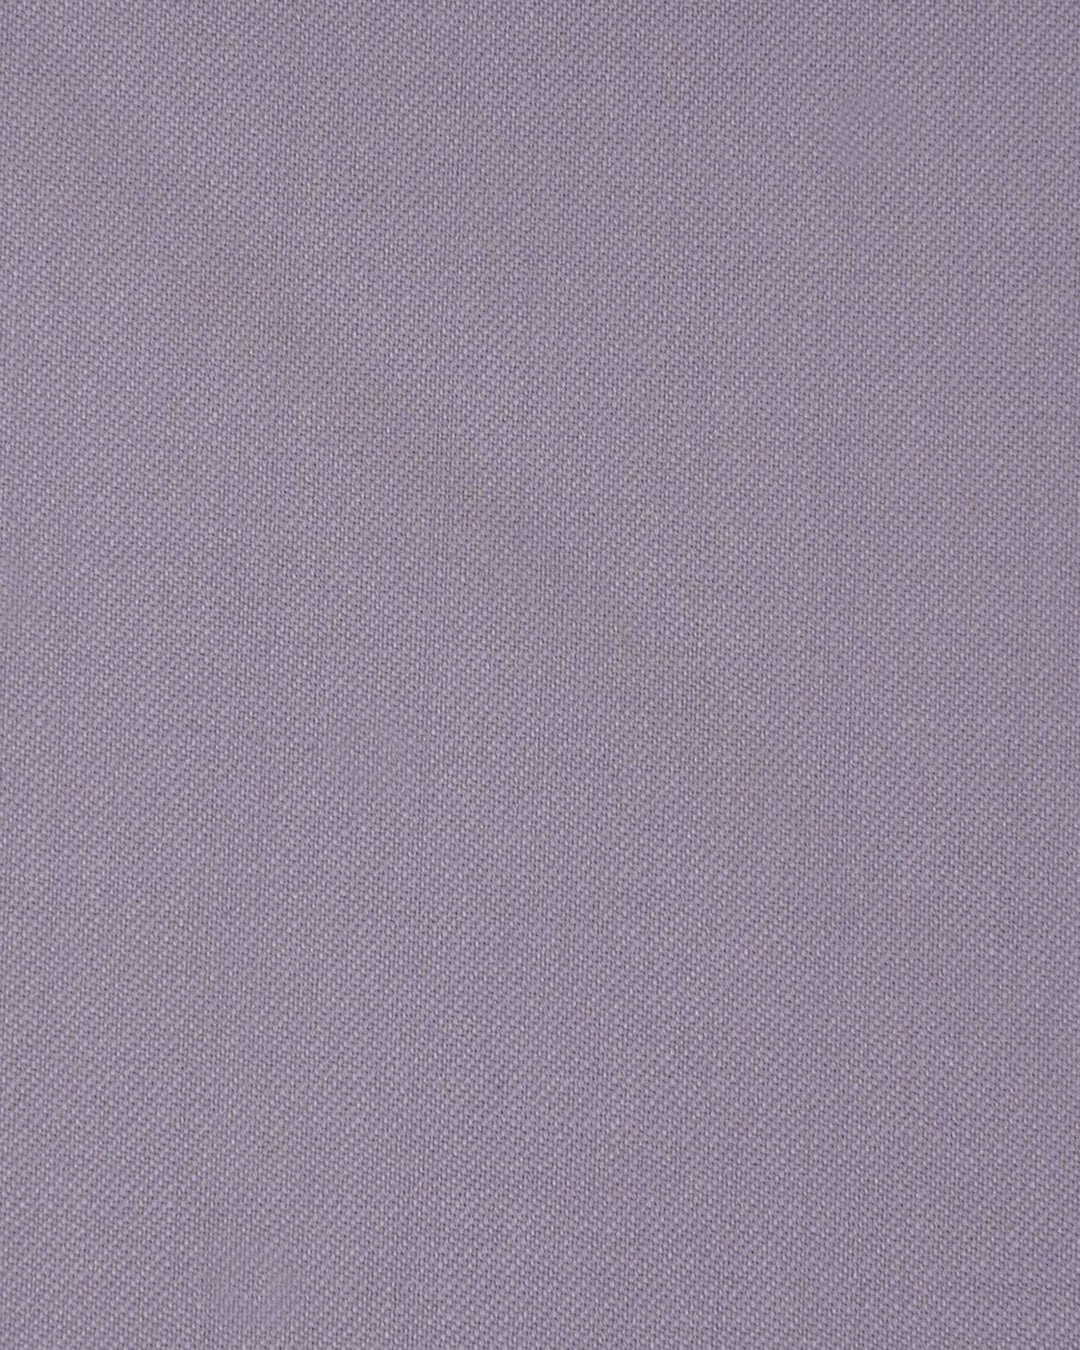 VBC 100% Wool: Purple Fade Twill